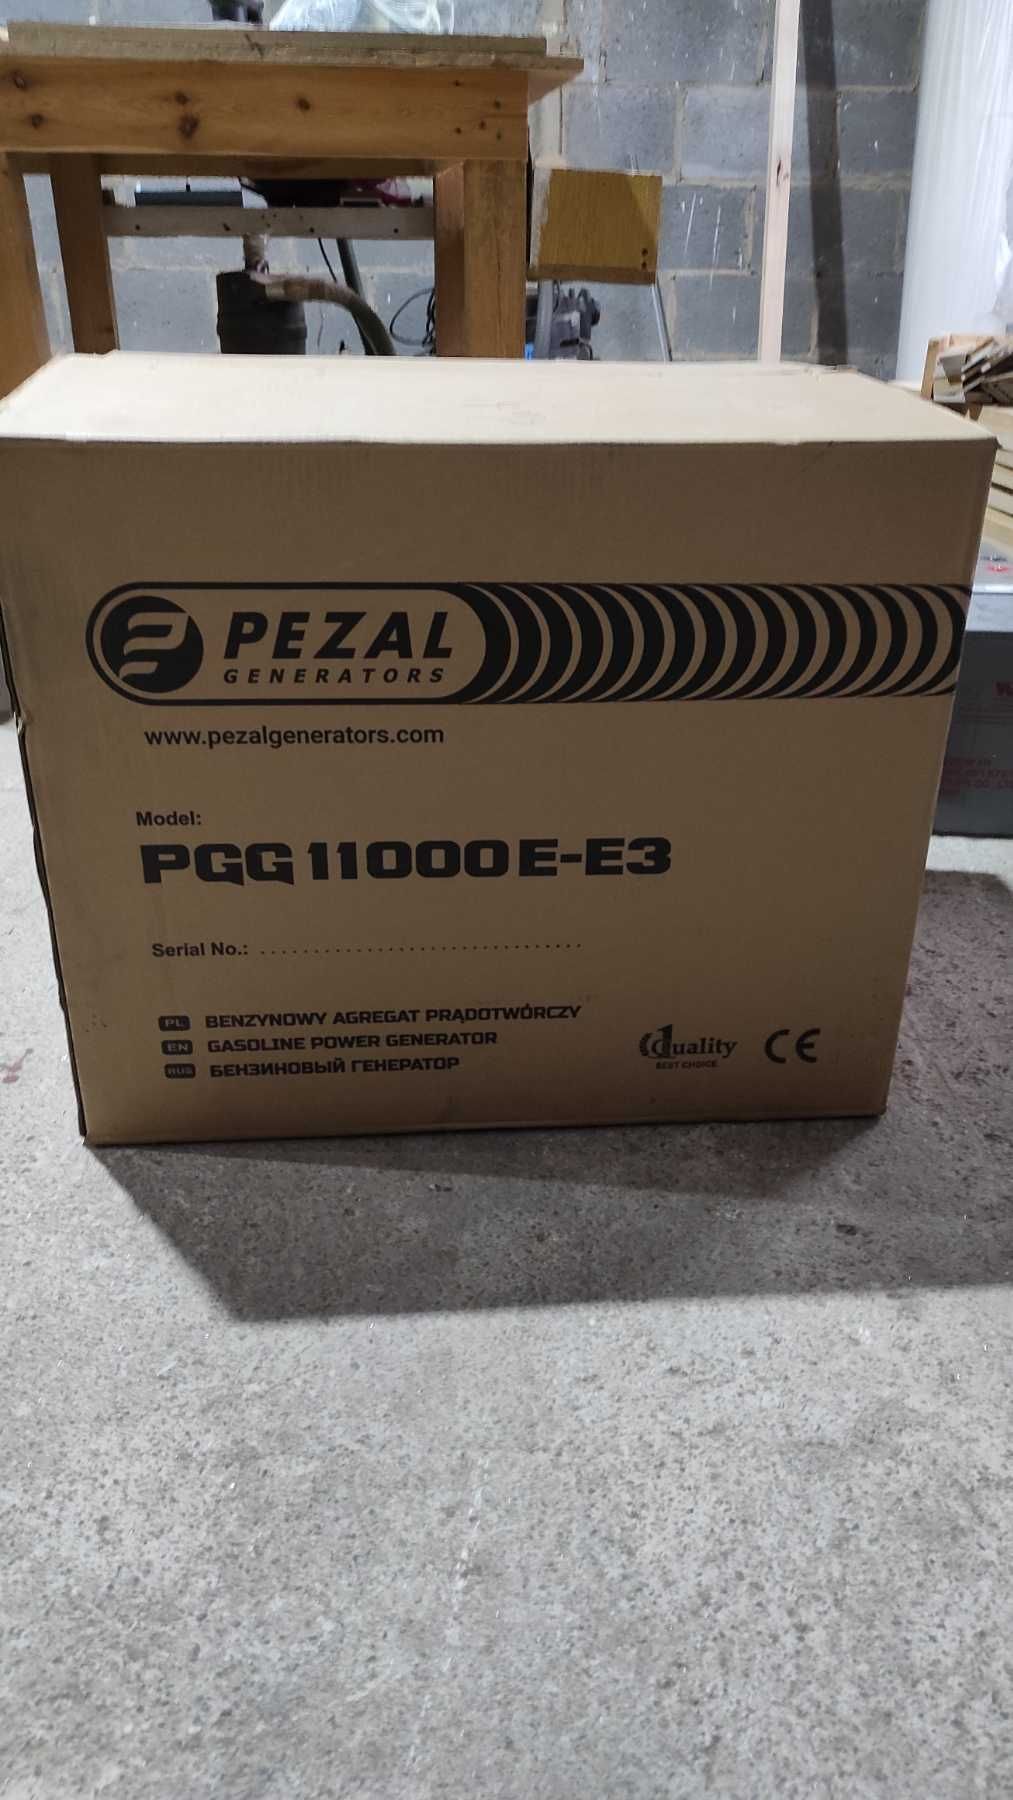 Генератор 380В/220В 10.6 кВа/8.5 кВт Pezal pgg11000e-e3 на 1 та3  фази